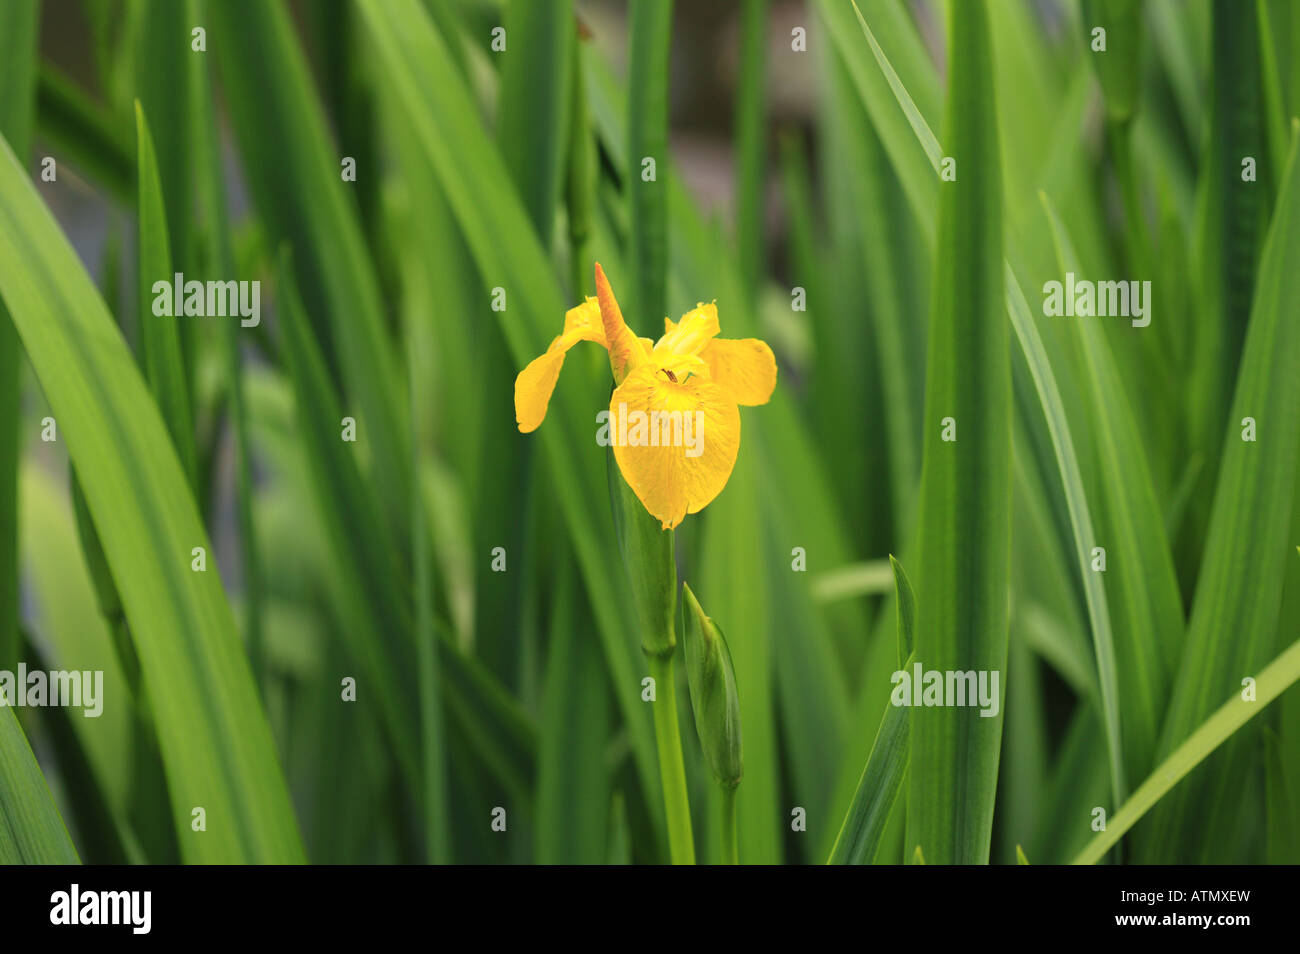 Iris pseudacorus o iris gialla, semi di piante acquatiche con fogliame verde a bordo d'acqua su un lago Foto Stock